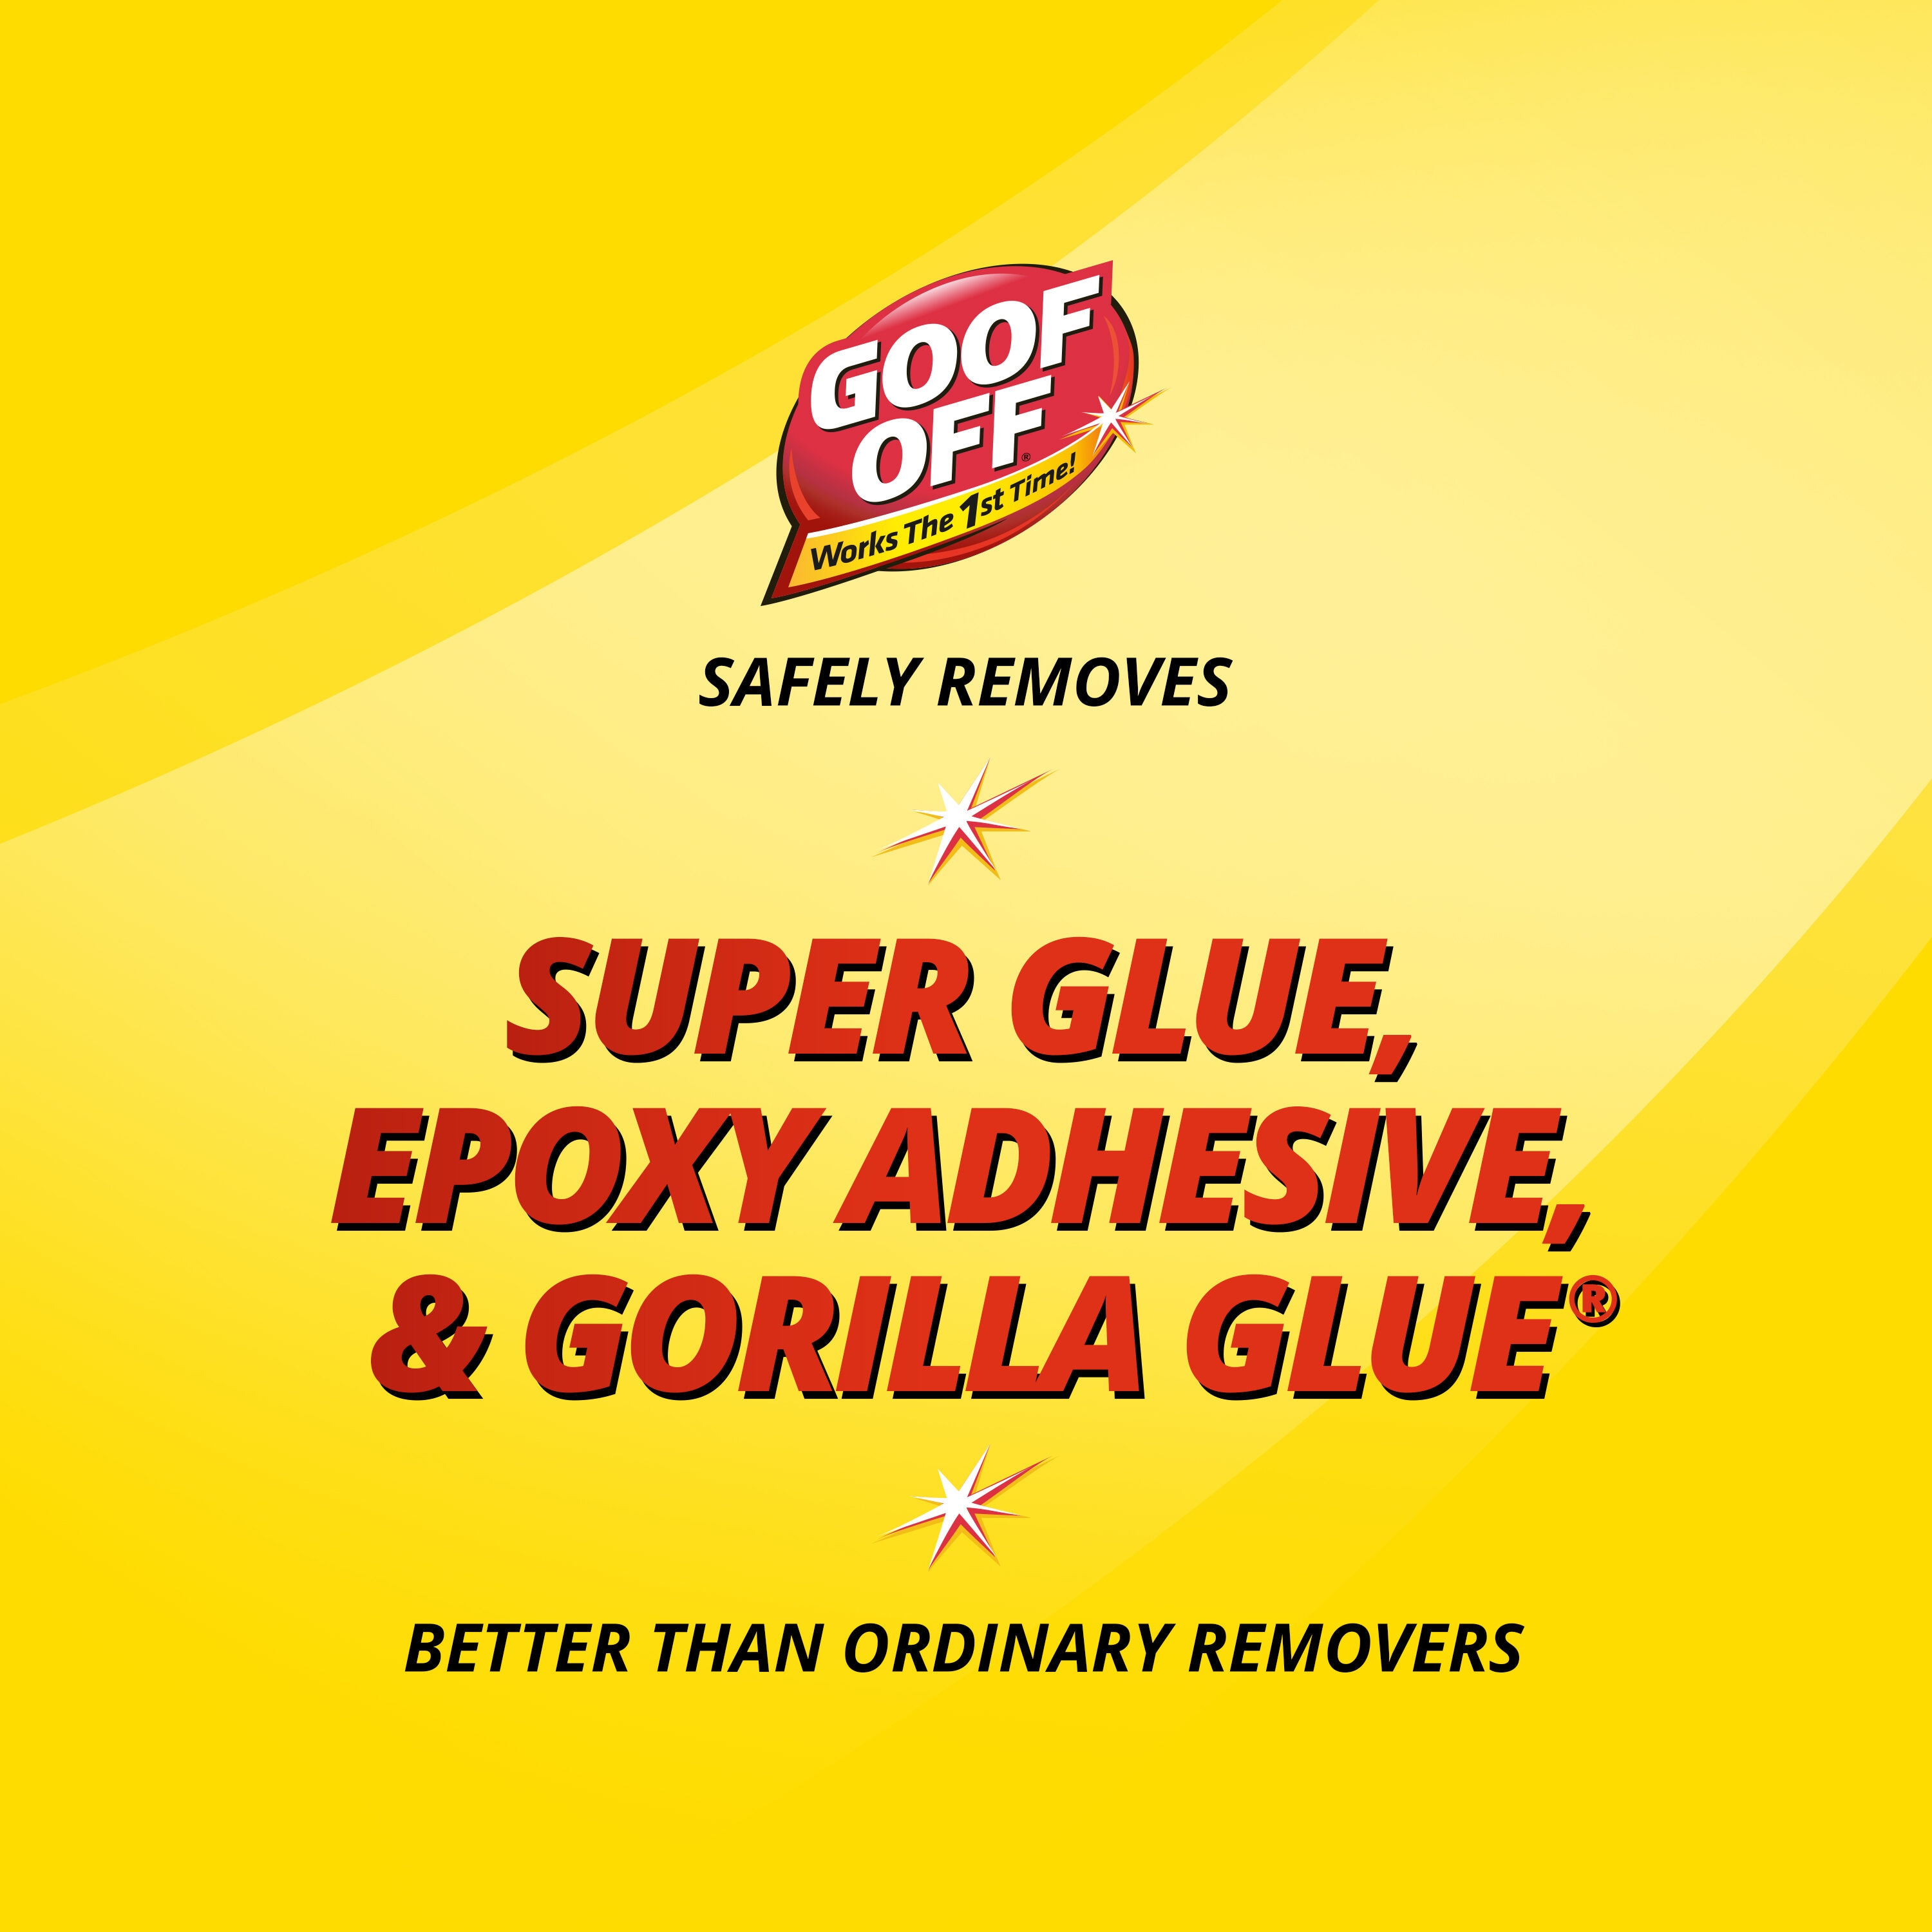 Goof Off Super Glue Remover, 4.5 oz - Scented Liquid Adhesive